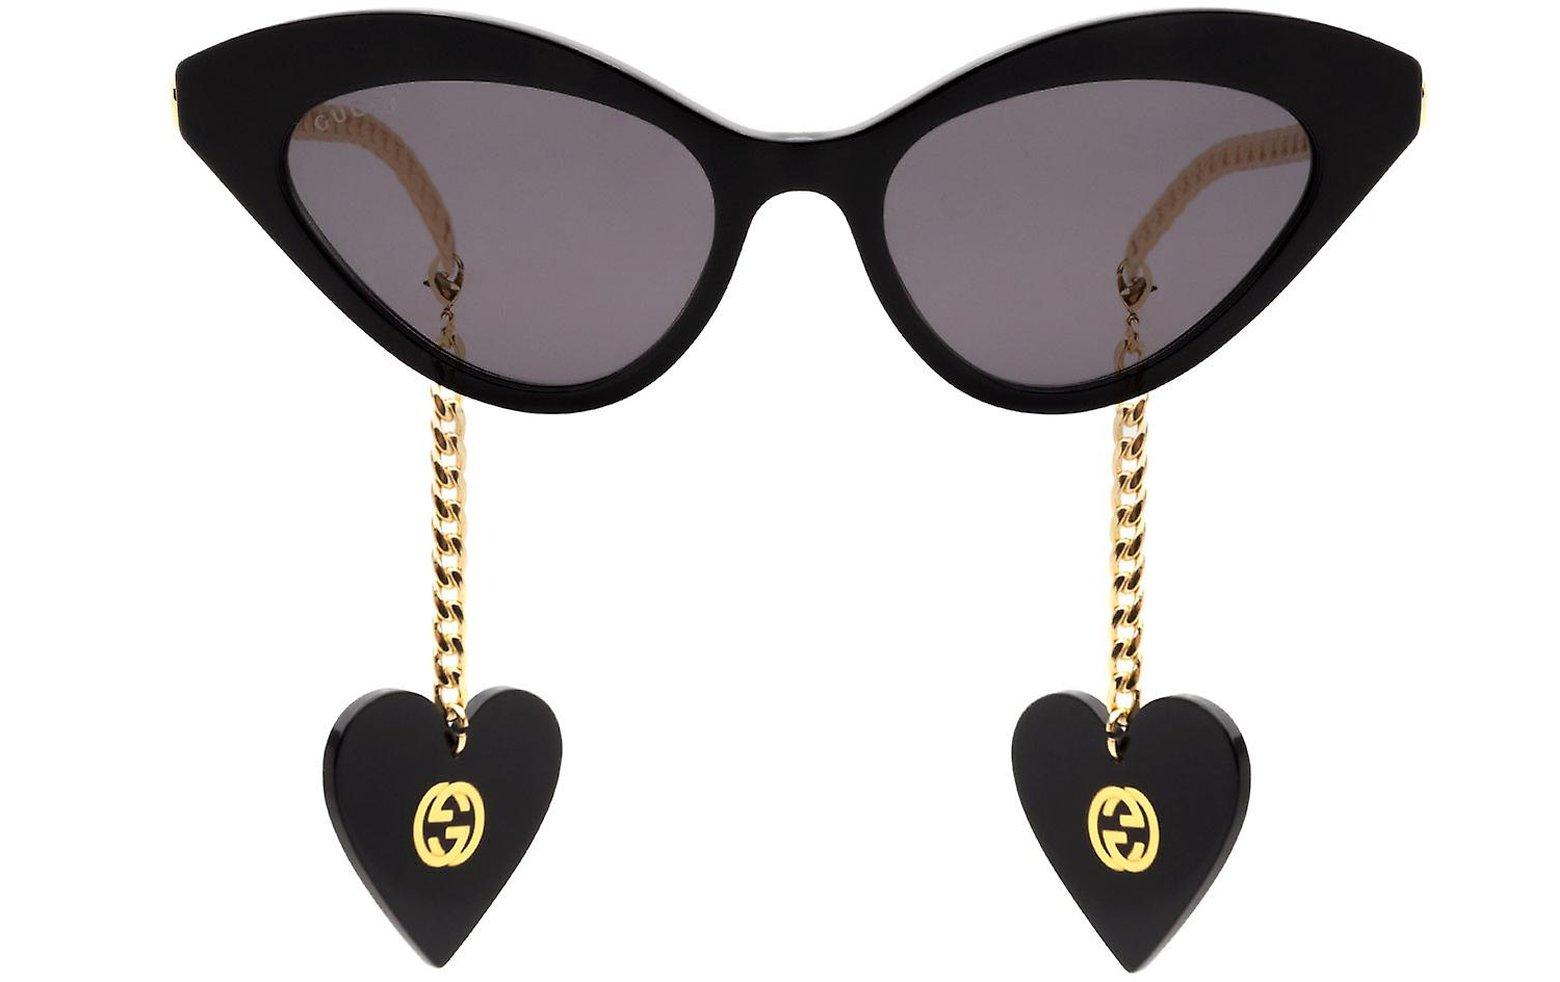 Gucci Eyewear heart-charm cat-eye Sunglasses - Farfetch